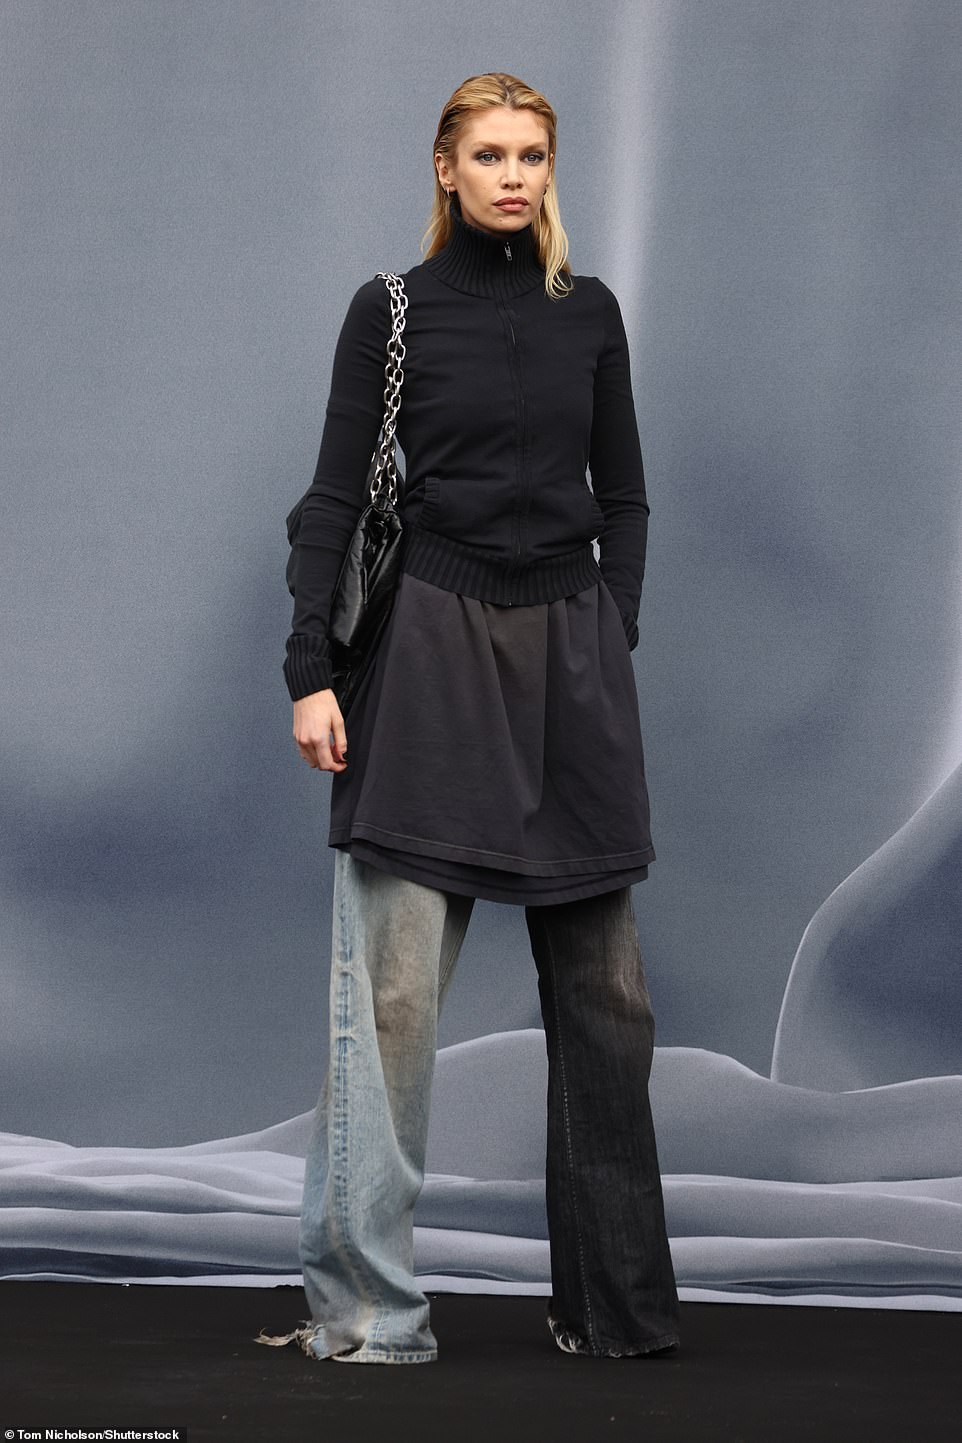 Модель Стелла Максвелл носила джинсы и черный джемпер на молнии.